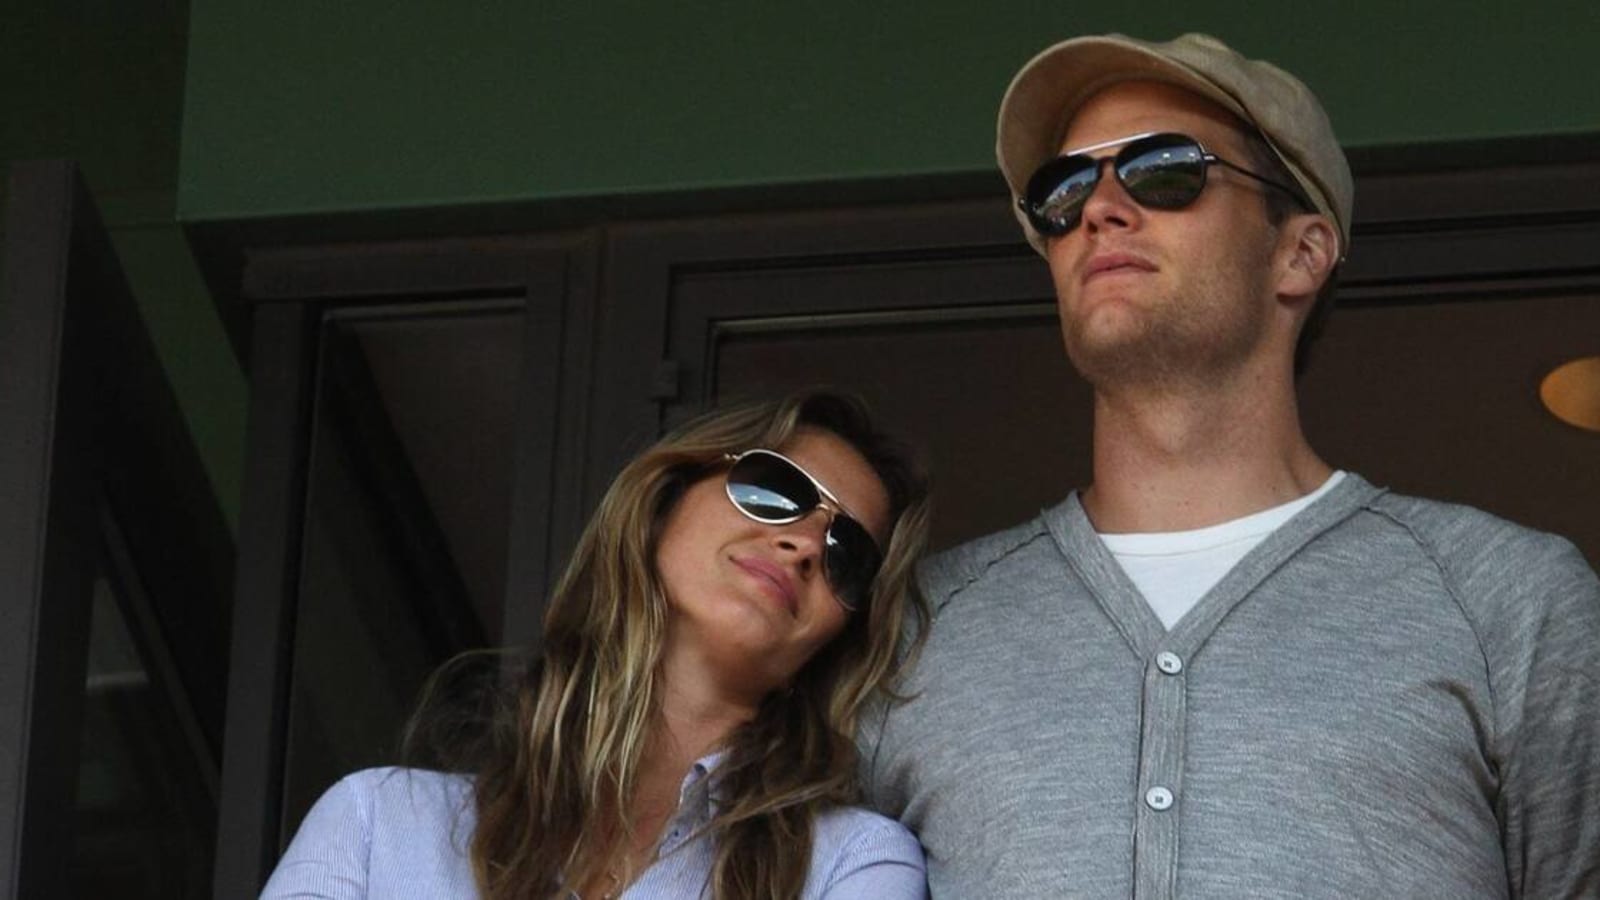 Gisele Bündchen Denies Cheating on Tom Brady, Speaks About New Romance